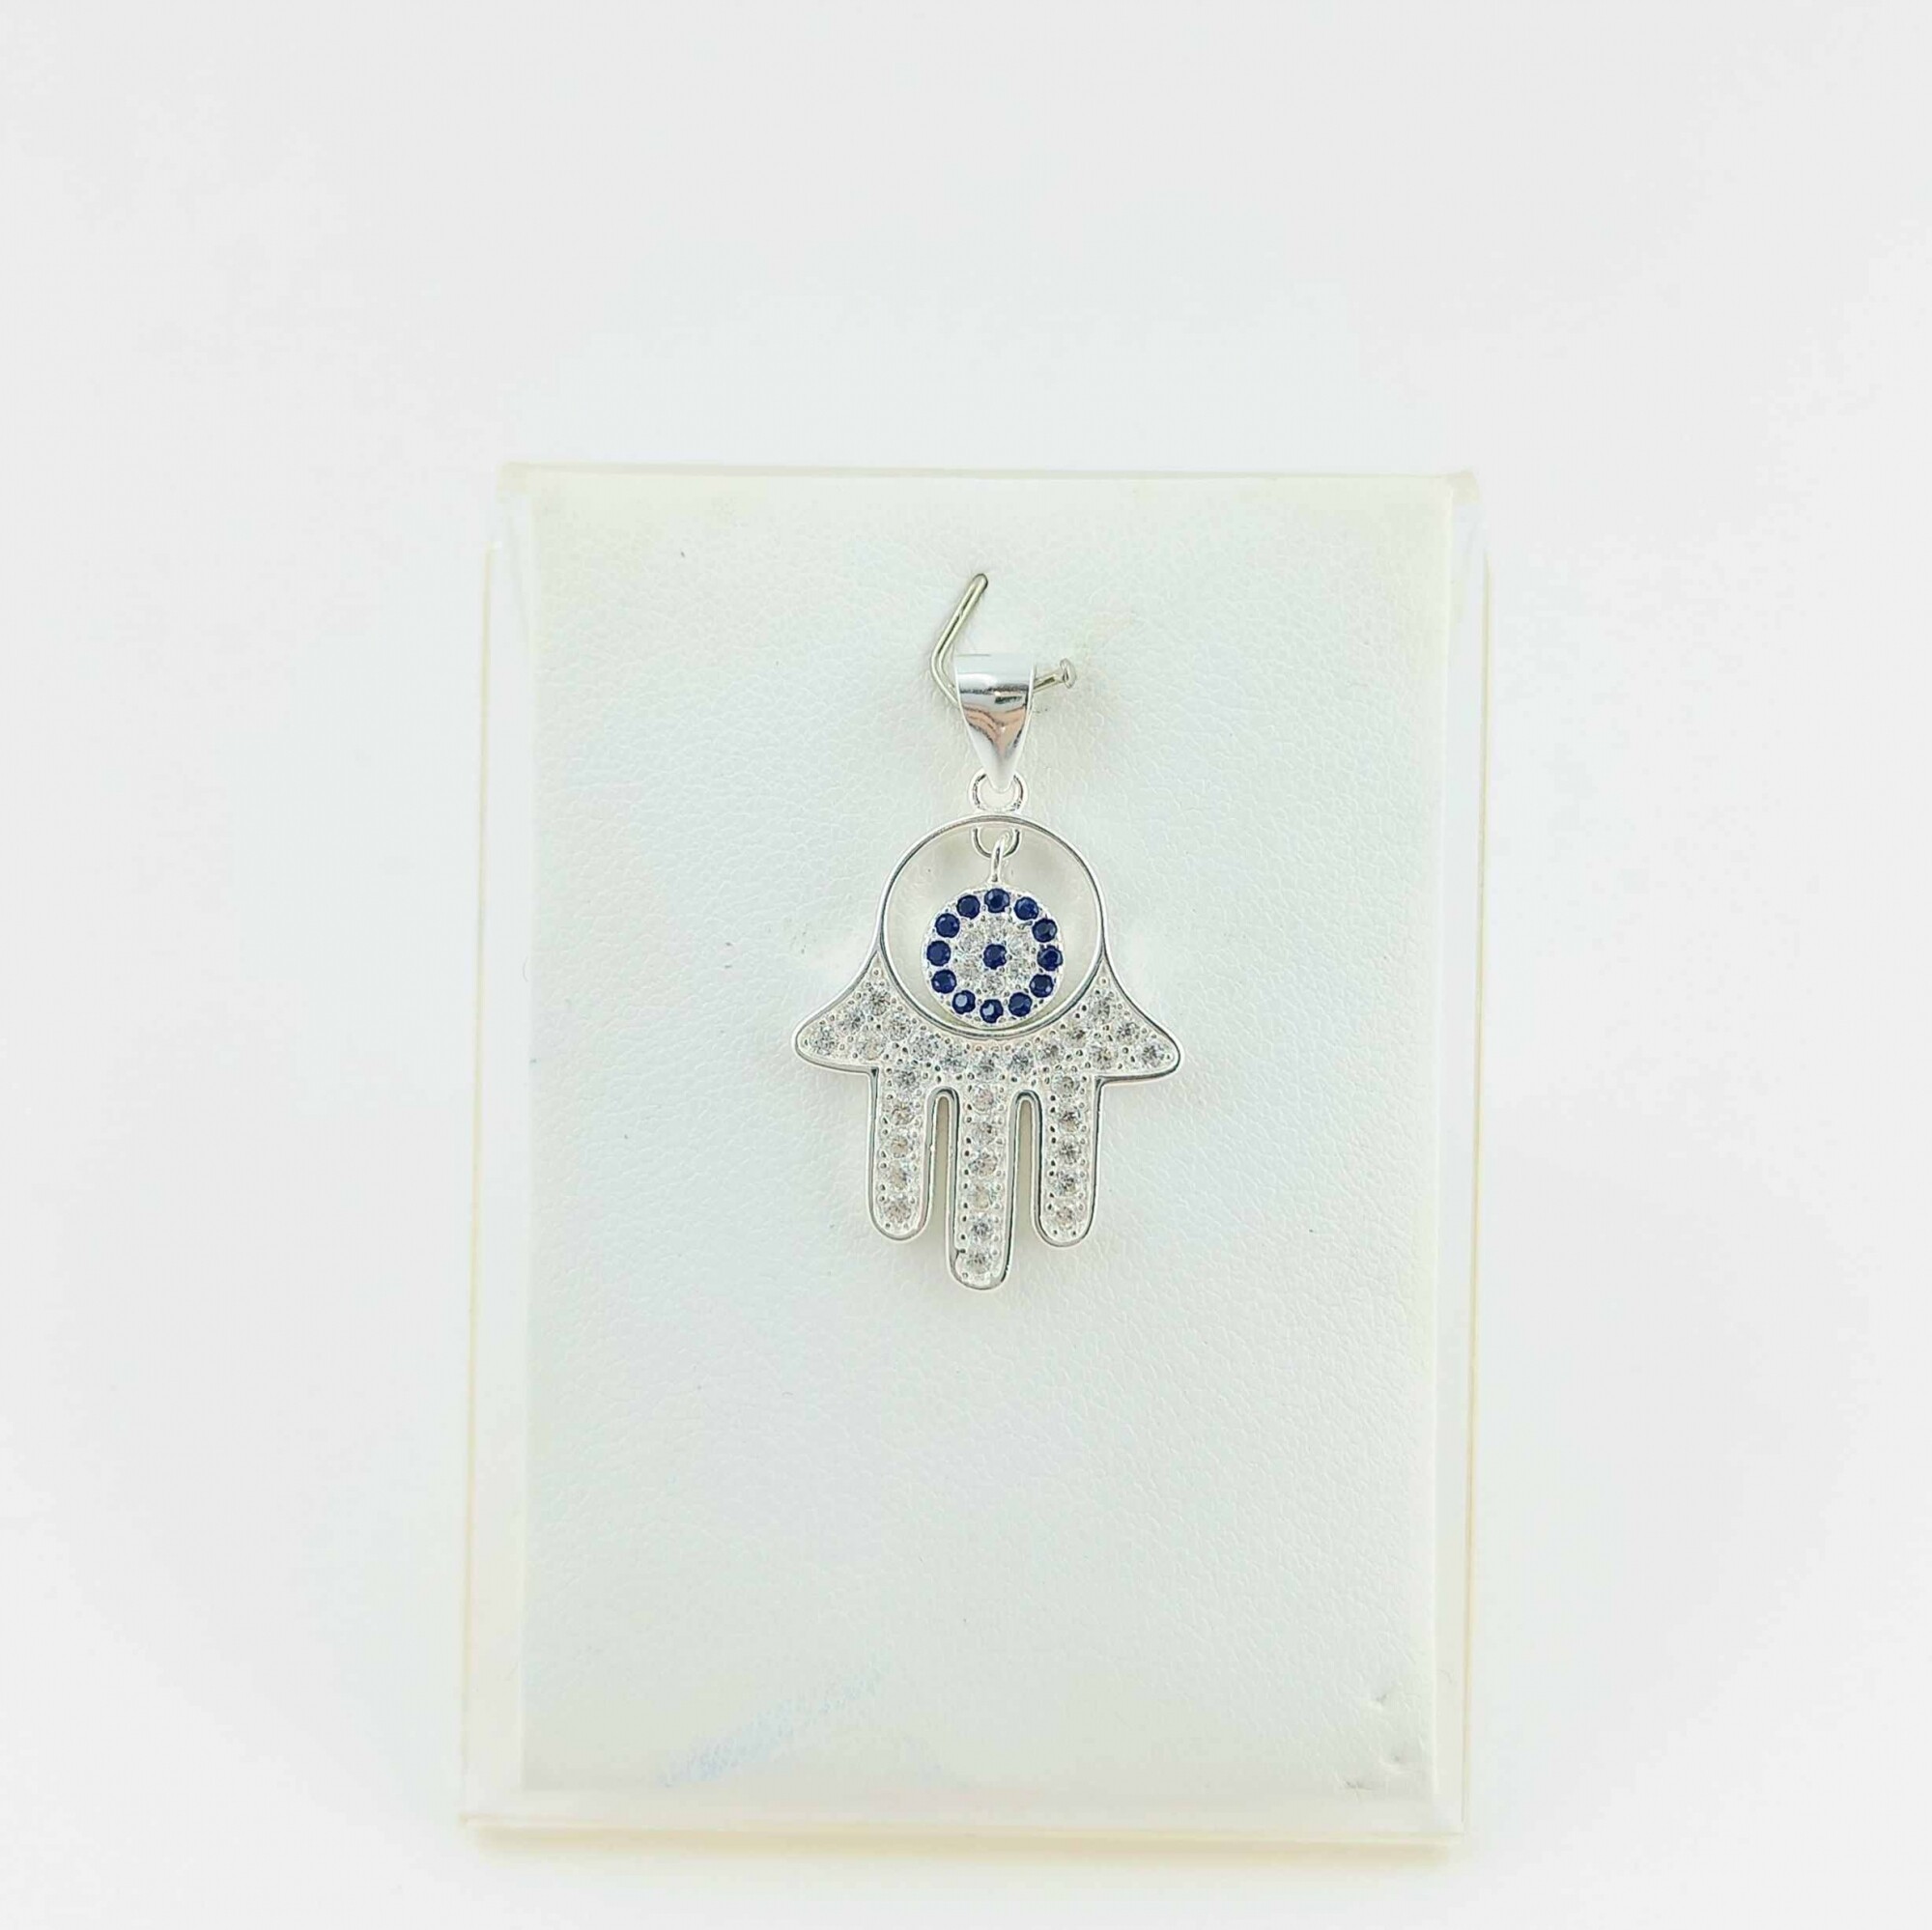 Pendiente largo de plata 925 con cadena y colgante con símbolo de mujer